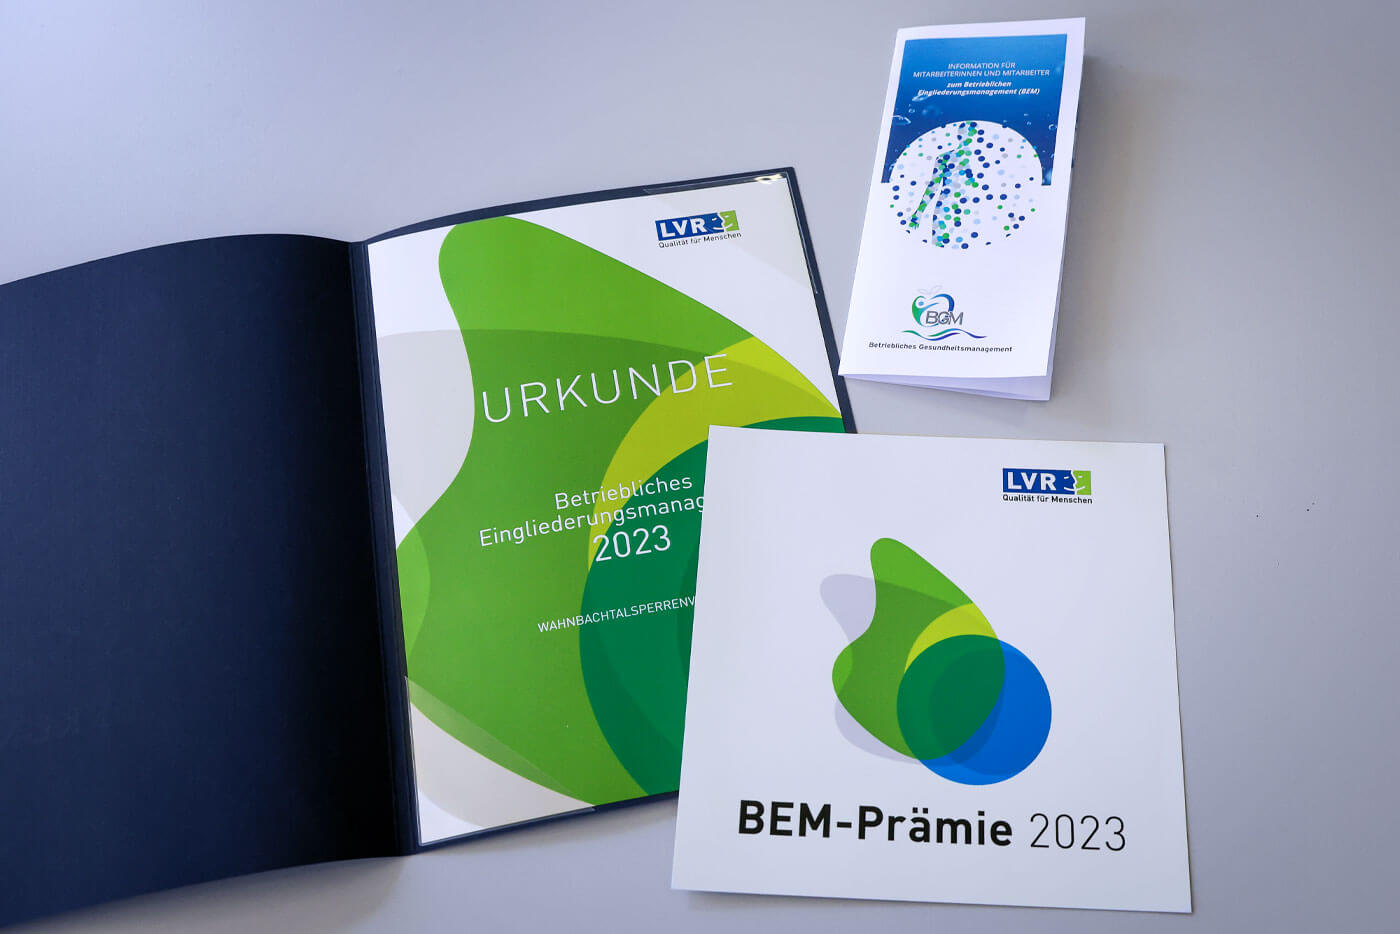 BEM-Flyer und Urkunde für die BEM-Prämie